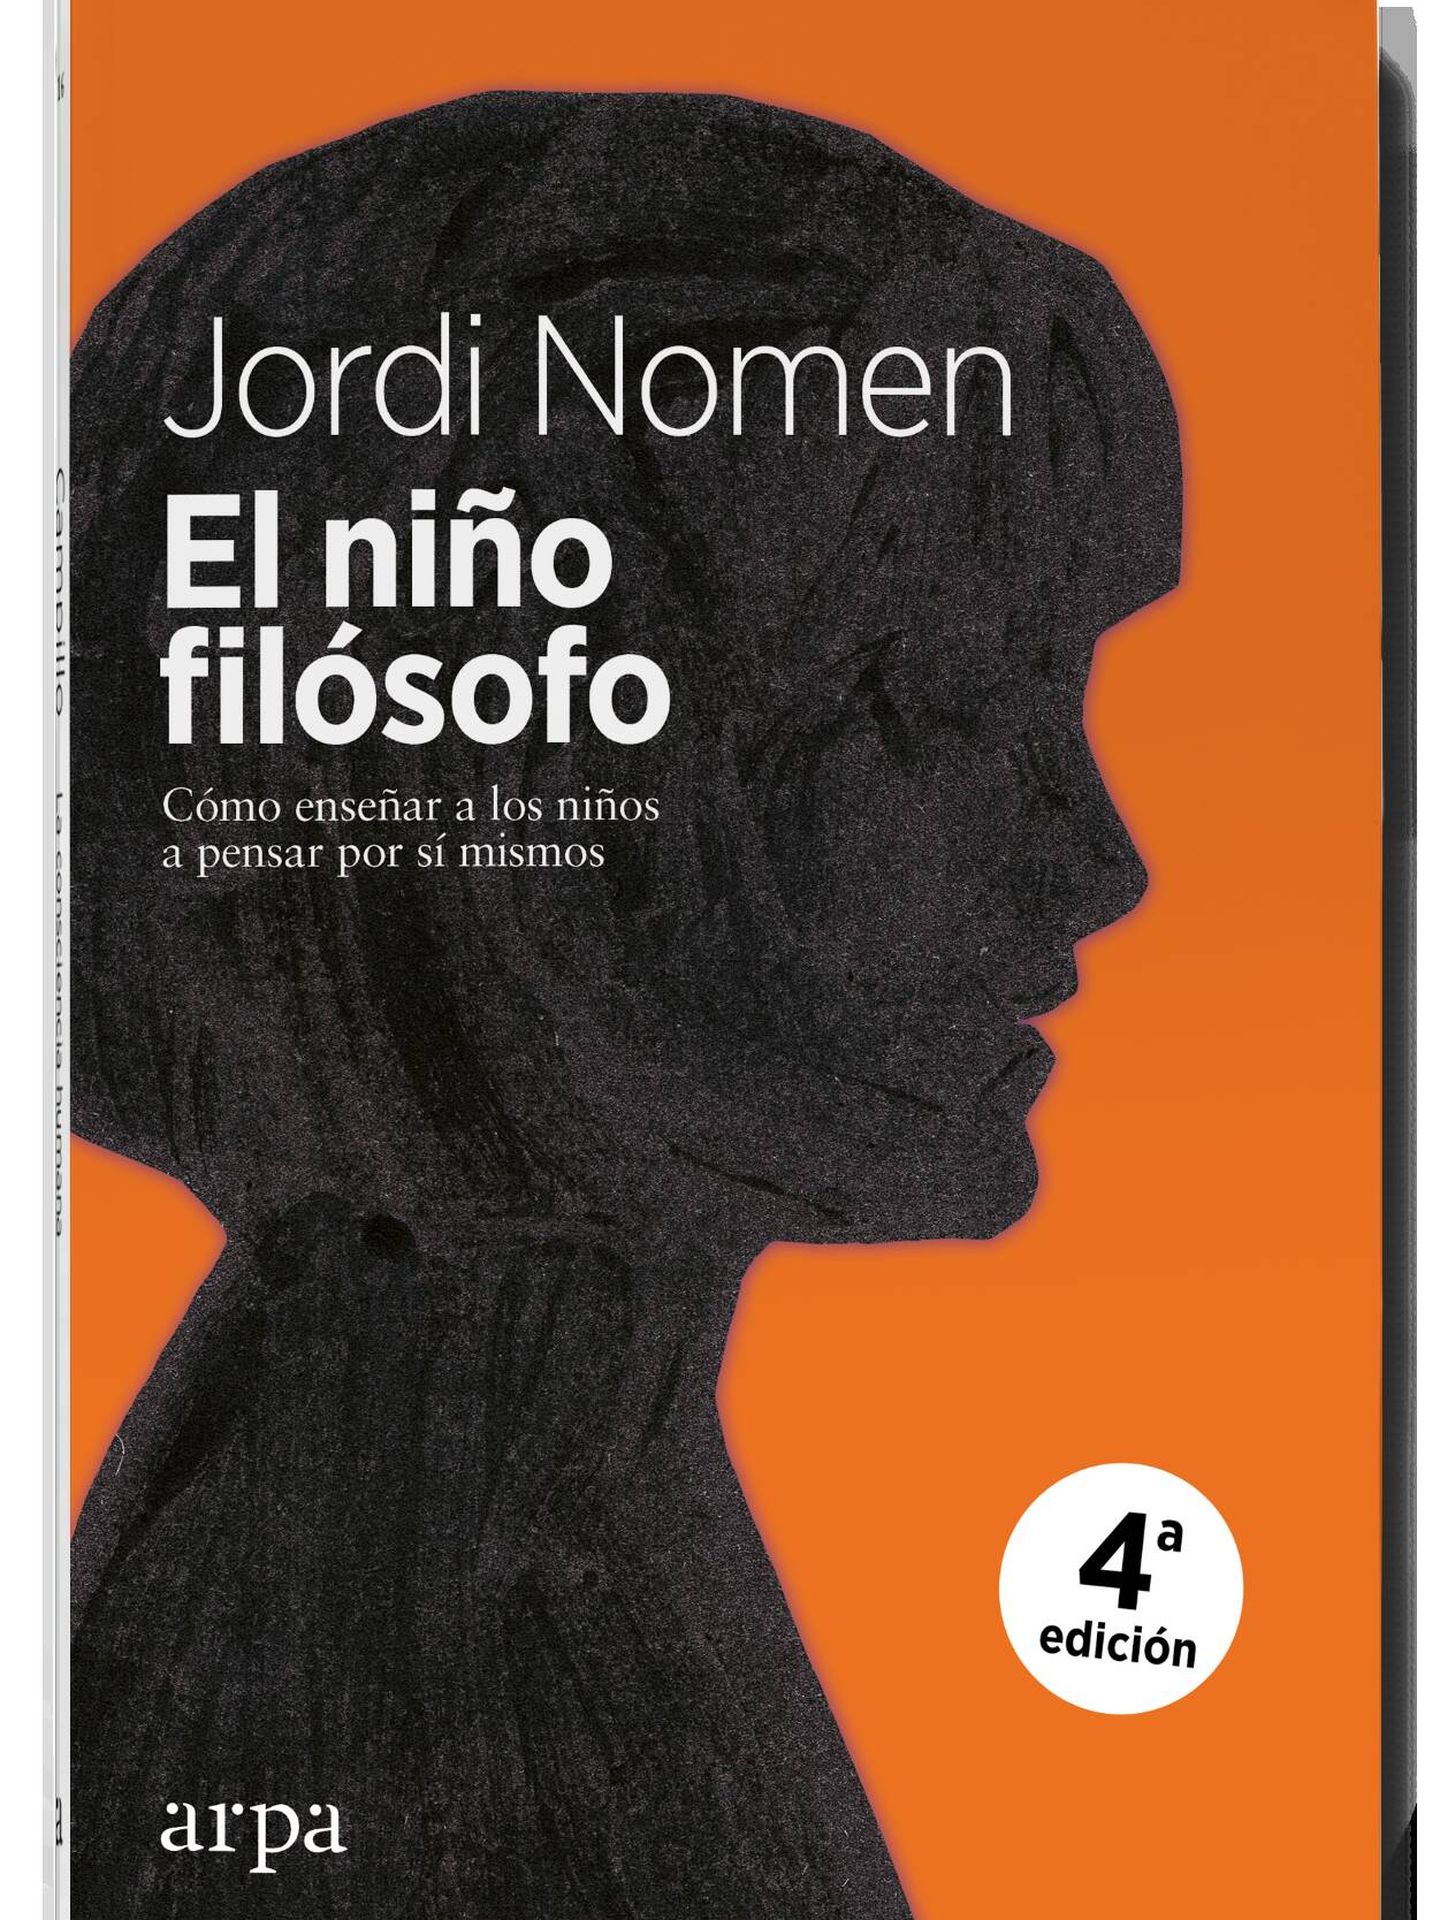 Imagen cedida del primer libro de la trilogía 'El niño filósofo' de Jordi Nomen